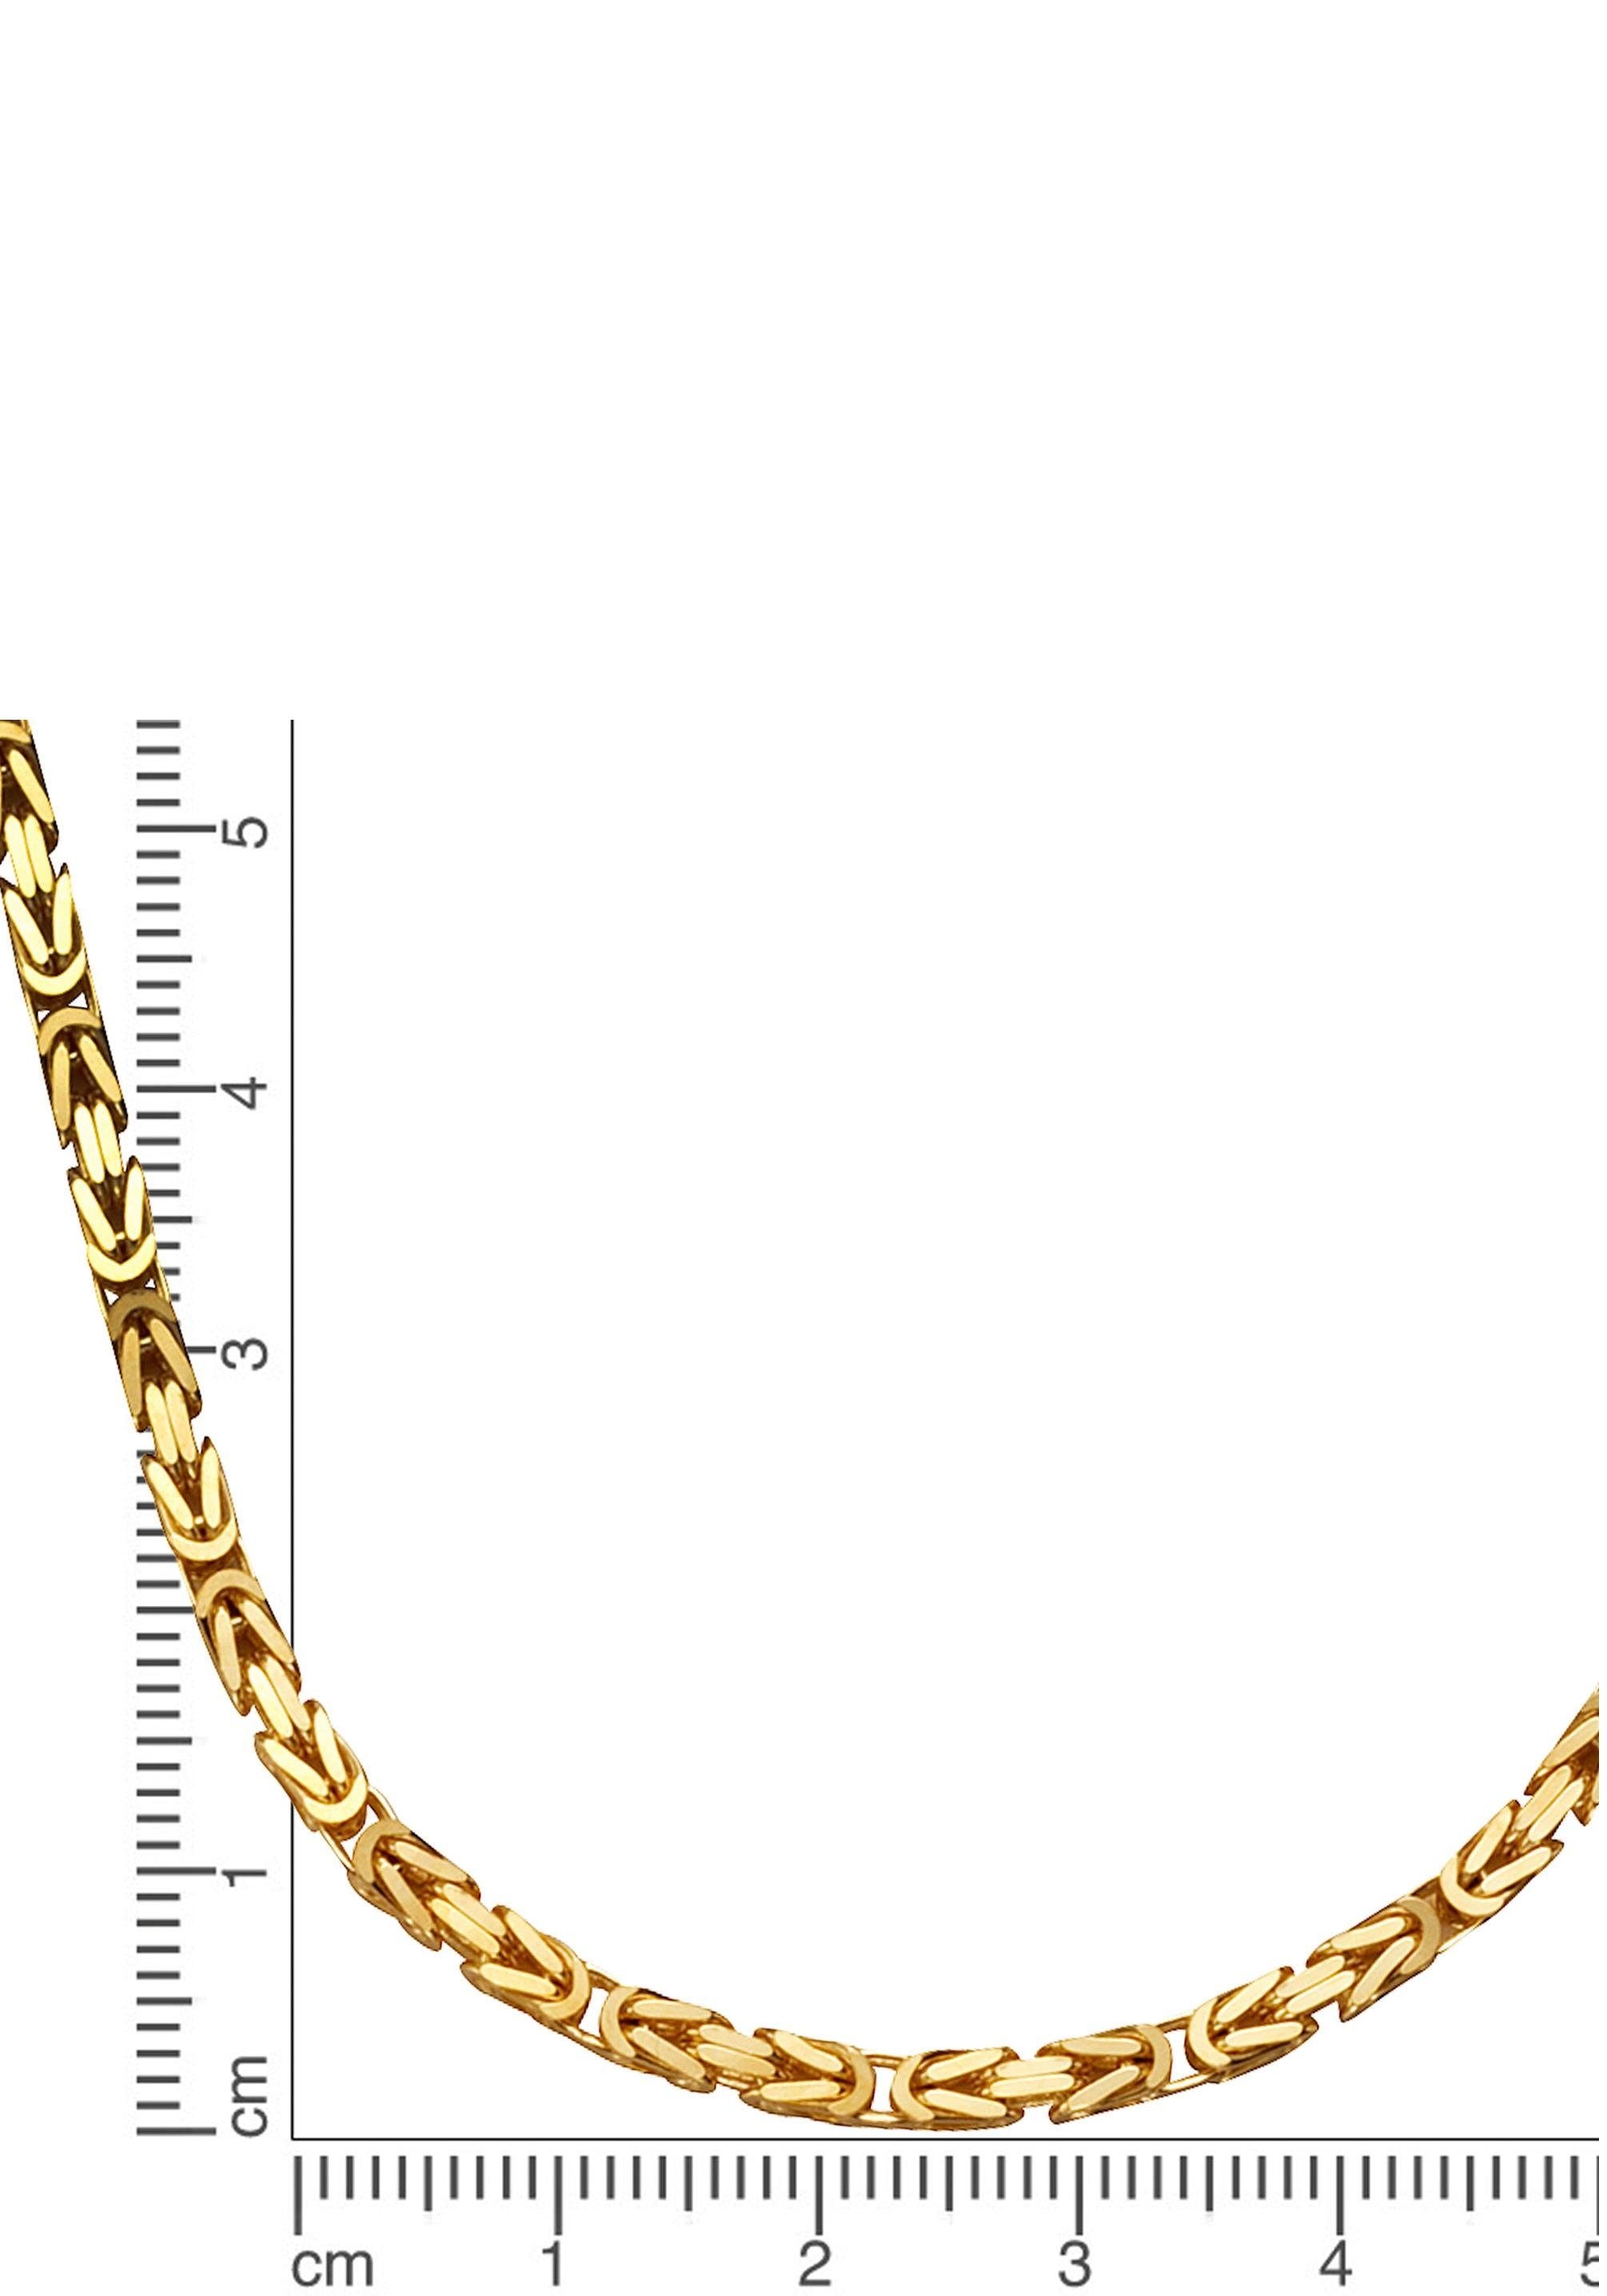 Firetti Collier »Schmuck Geschenk Gold 585 Halsschmuck Halskette Goldkette Königskette«, Made in Germany